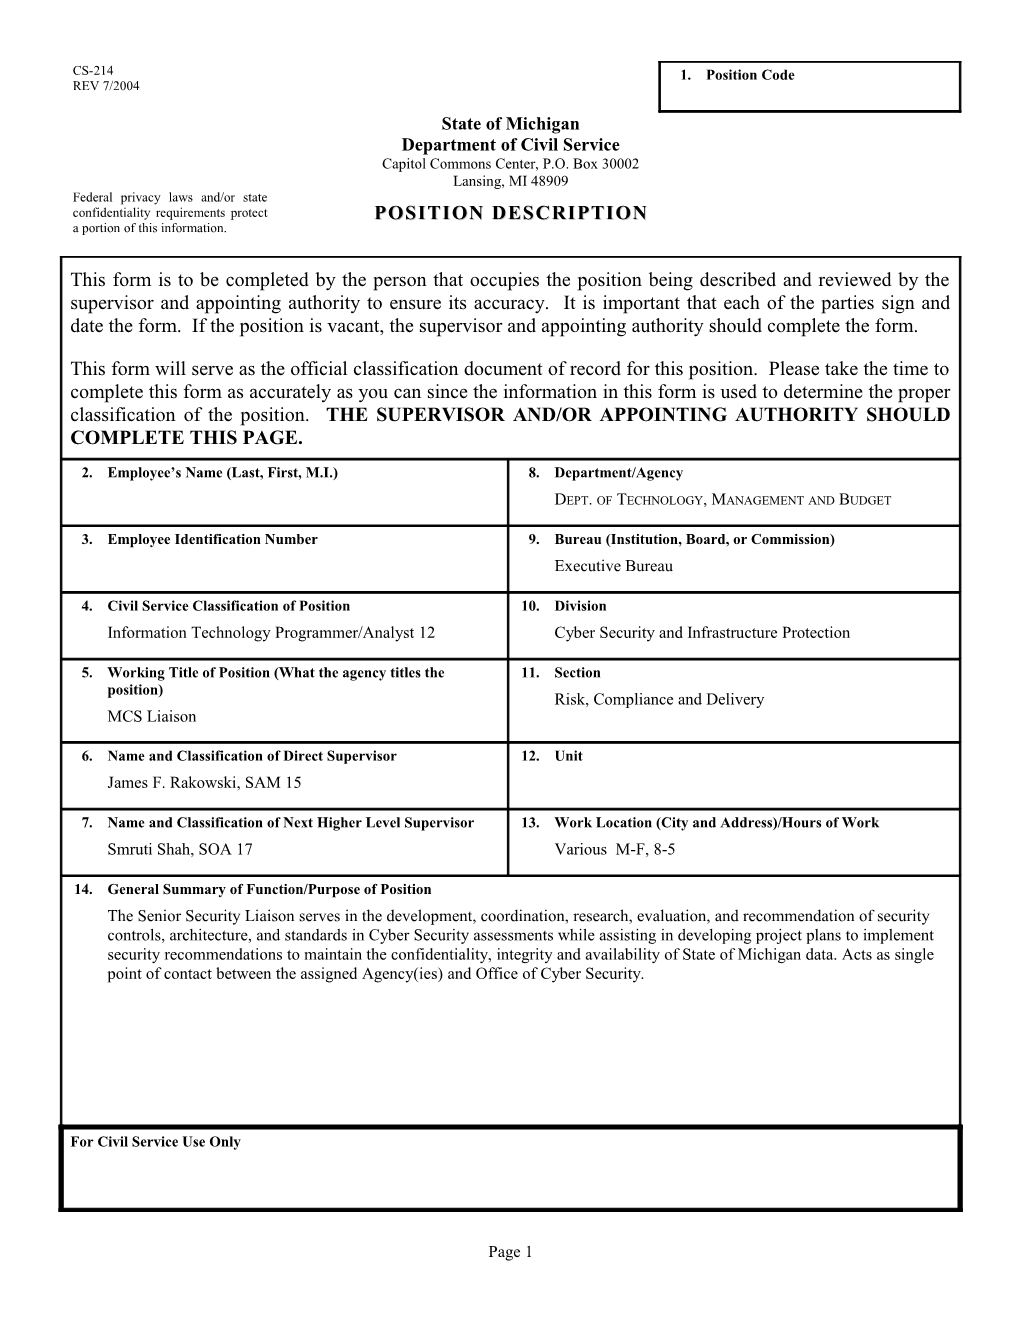 CS-214 Position Description Form